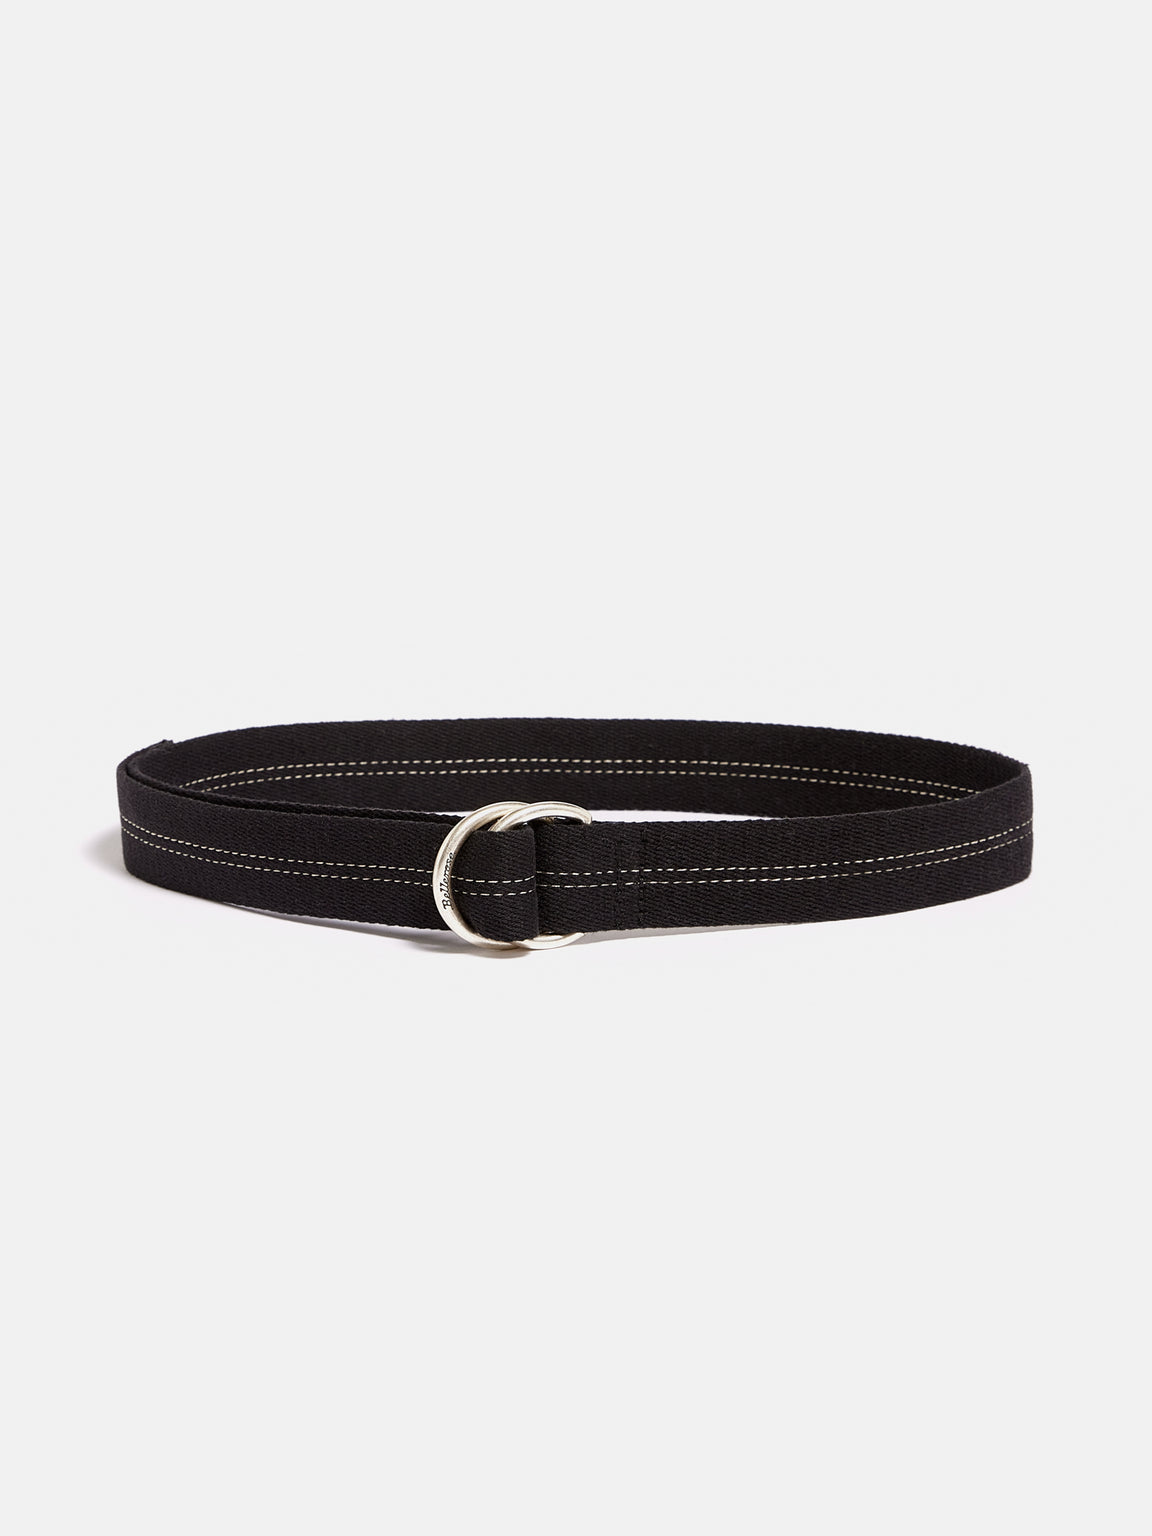 Saisme Belt - Black | Men Collection | Bellerose